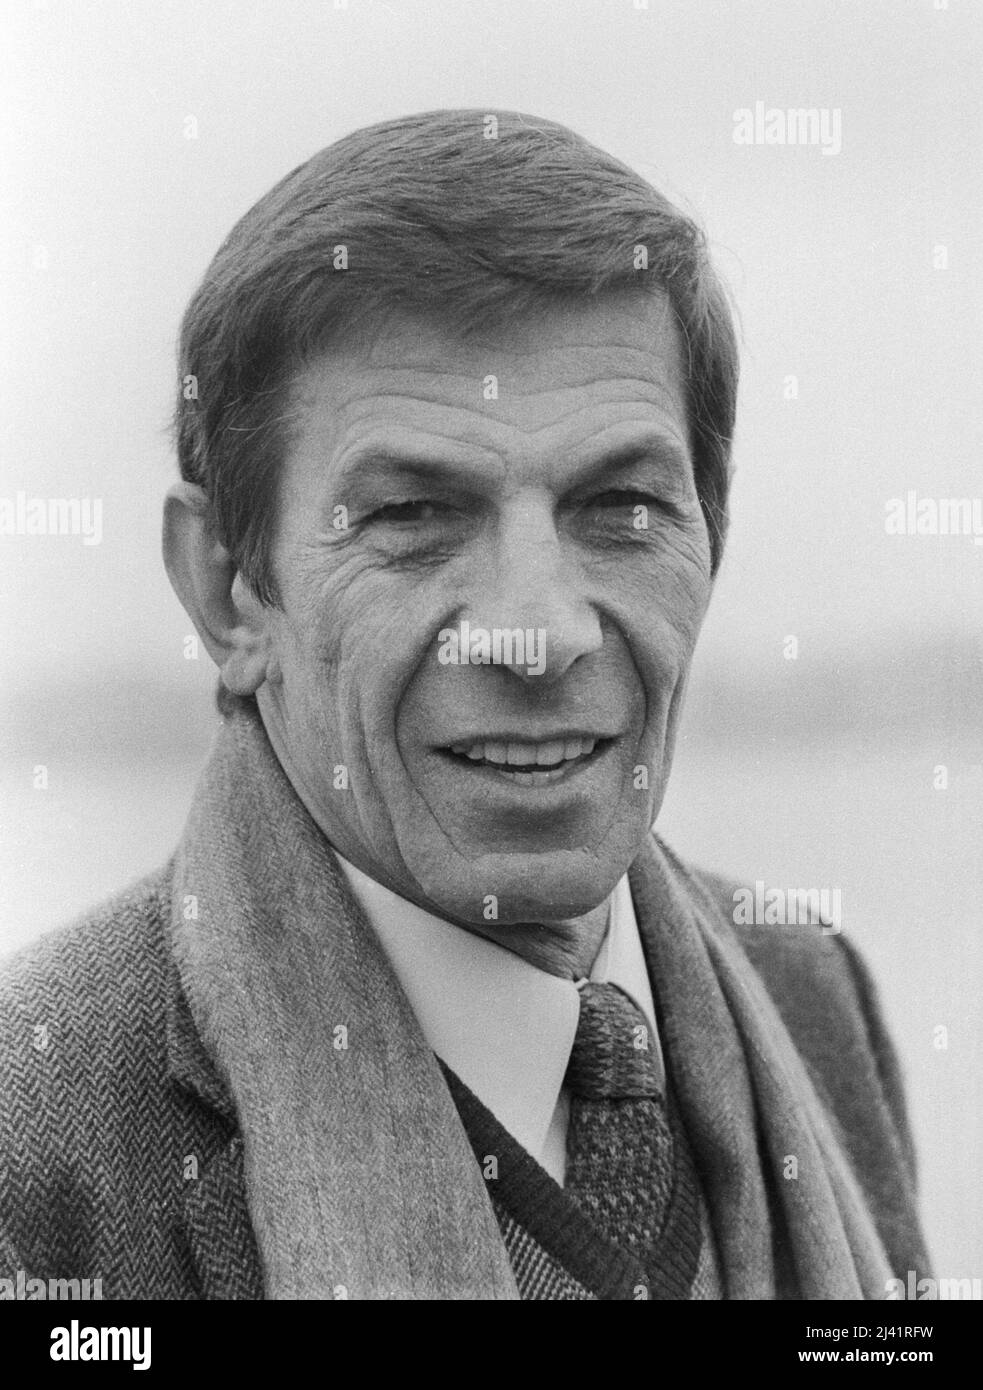 Leonard Nimoy, bekannt als 'Mr. Spock' aus der SciFi-Fernsehserie 'Raumschiff Enterprise', bei einem Besuch in Hamburg, Deutschland um 1989. Stock Photo